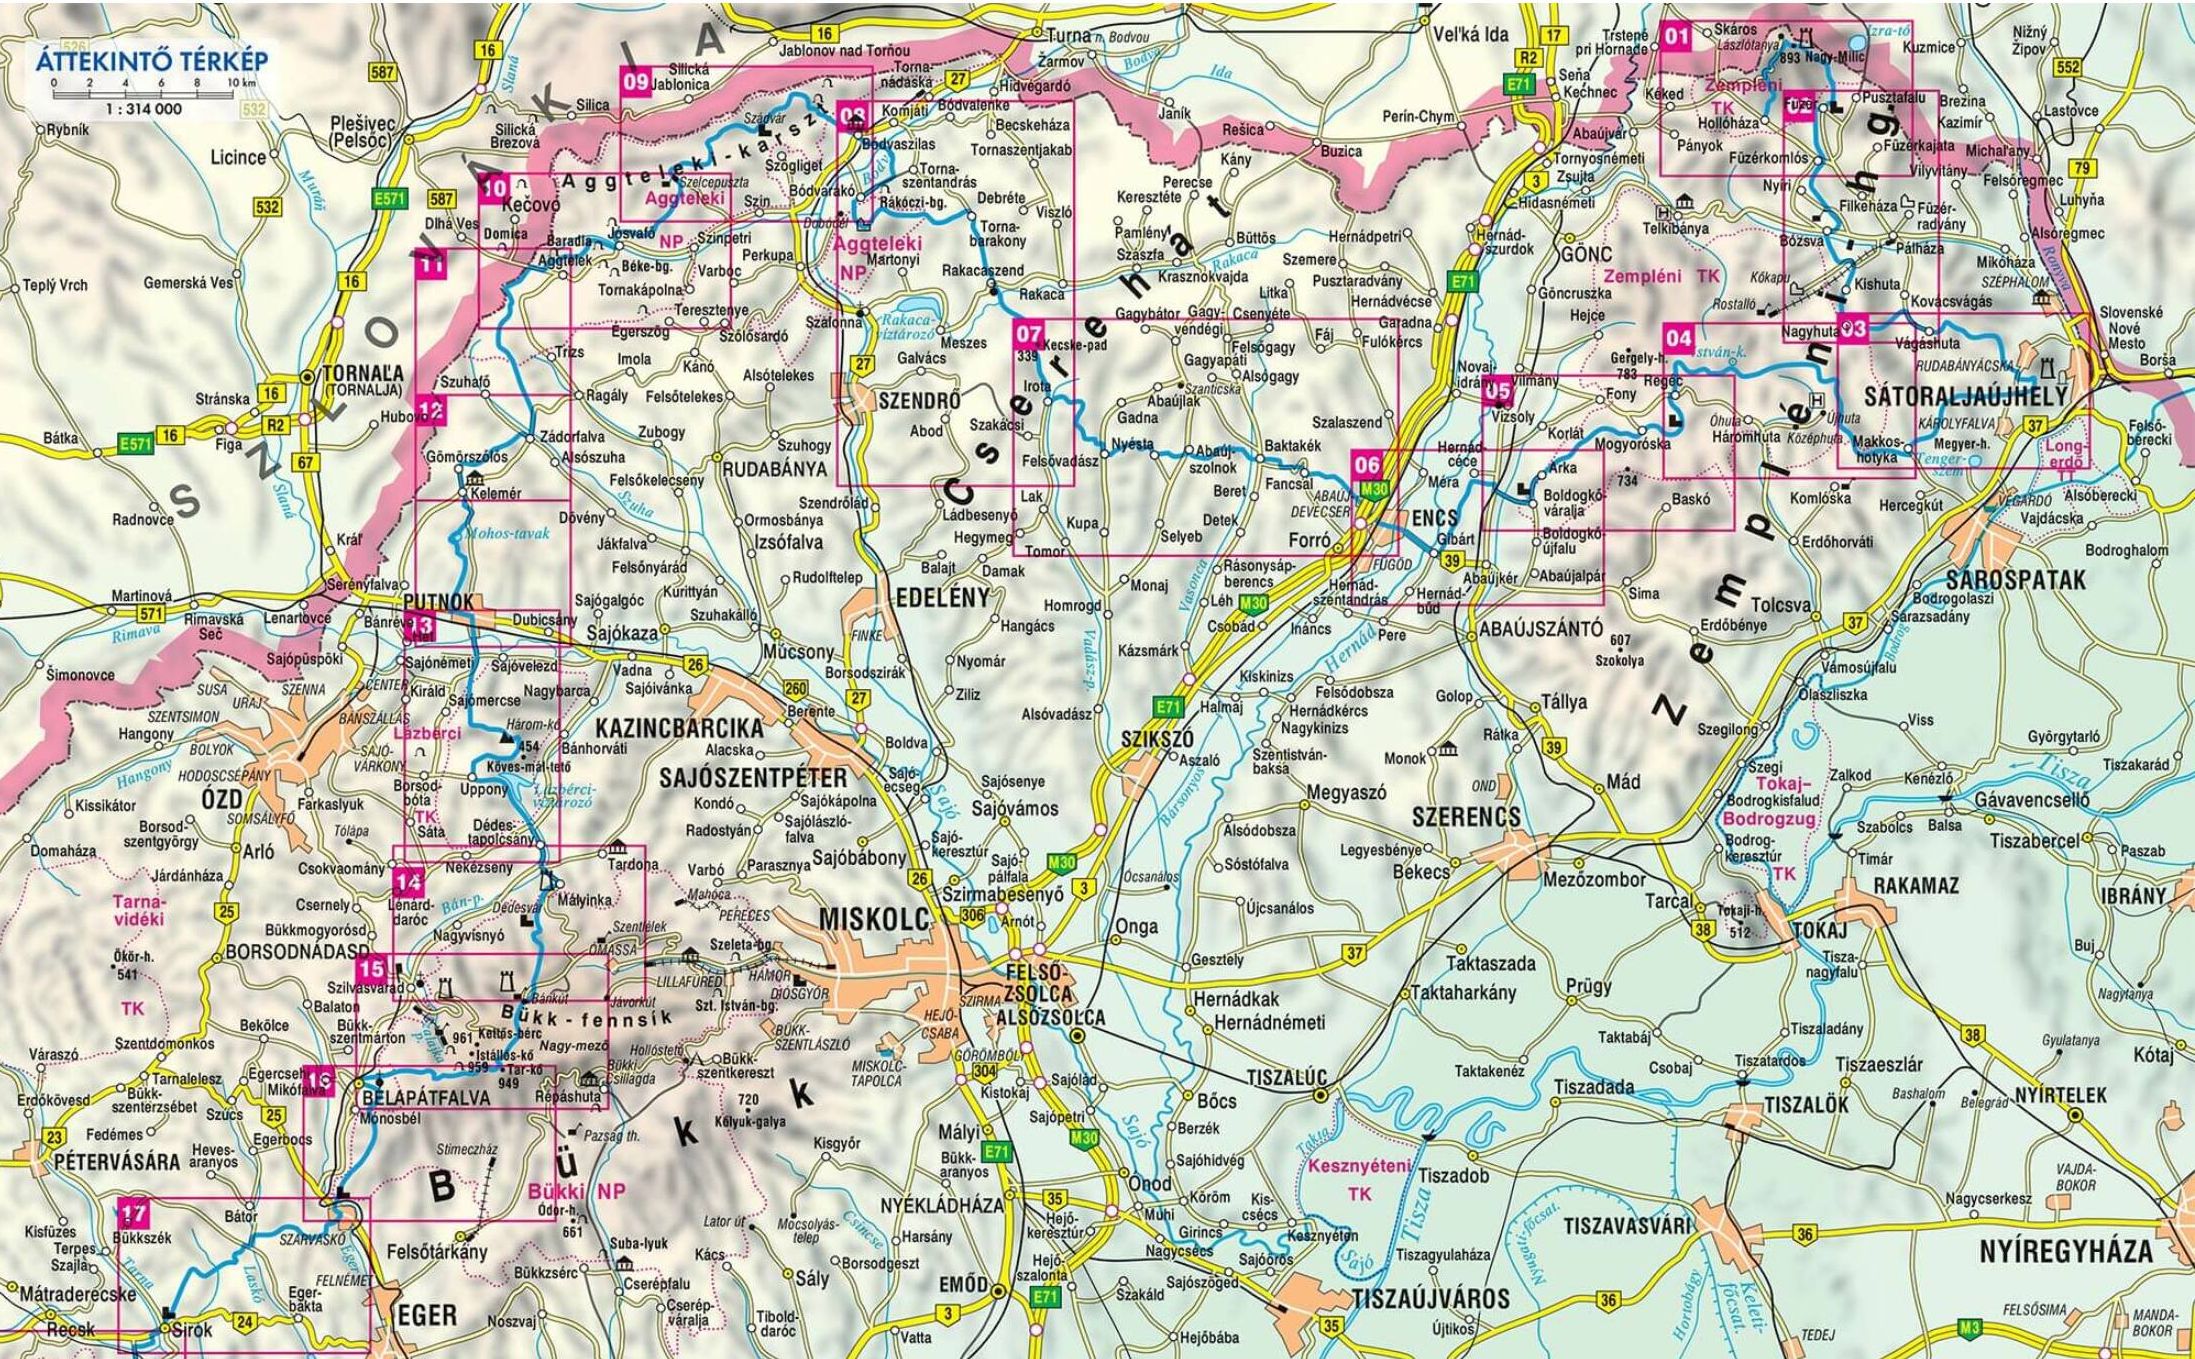 Kéktúra 1. térképszett: áttekintő térkép (1-17. túra)